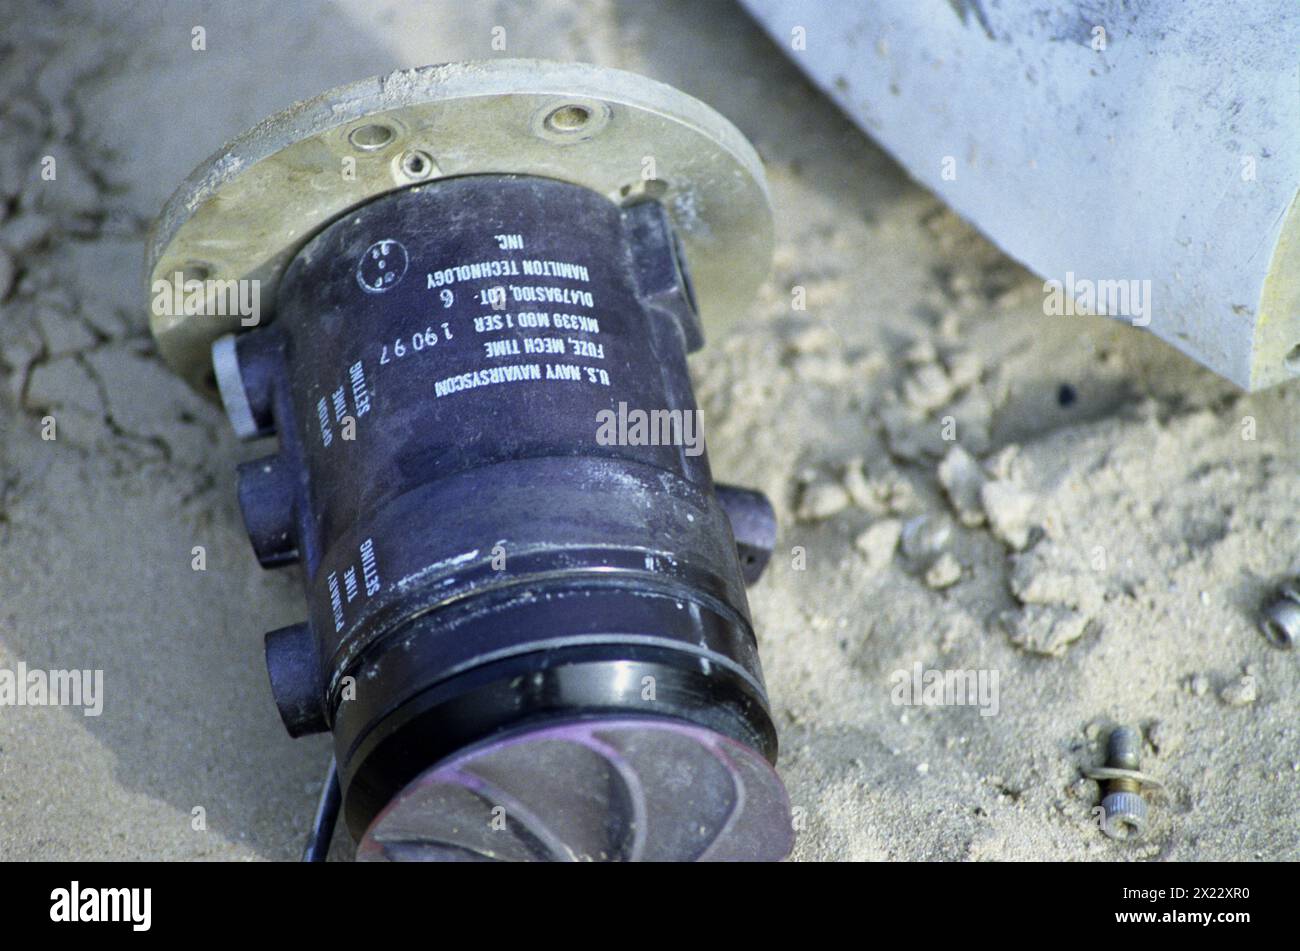 1 aprile 1991 una fusione americana Mk 339 Mod 1 da una bomba a grappolo CBU-100 (Mk-20 Rockeye), sulla 'Highway of Death', ad ovest di Kuwait City sulla strada principale per Basra. Foto Stock